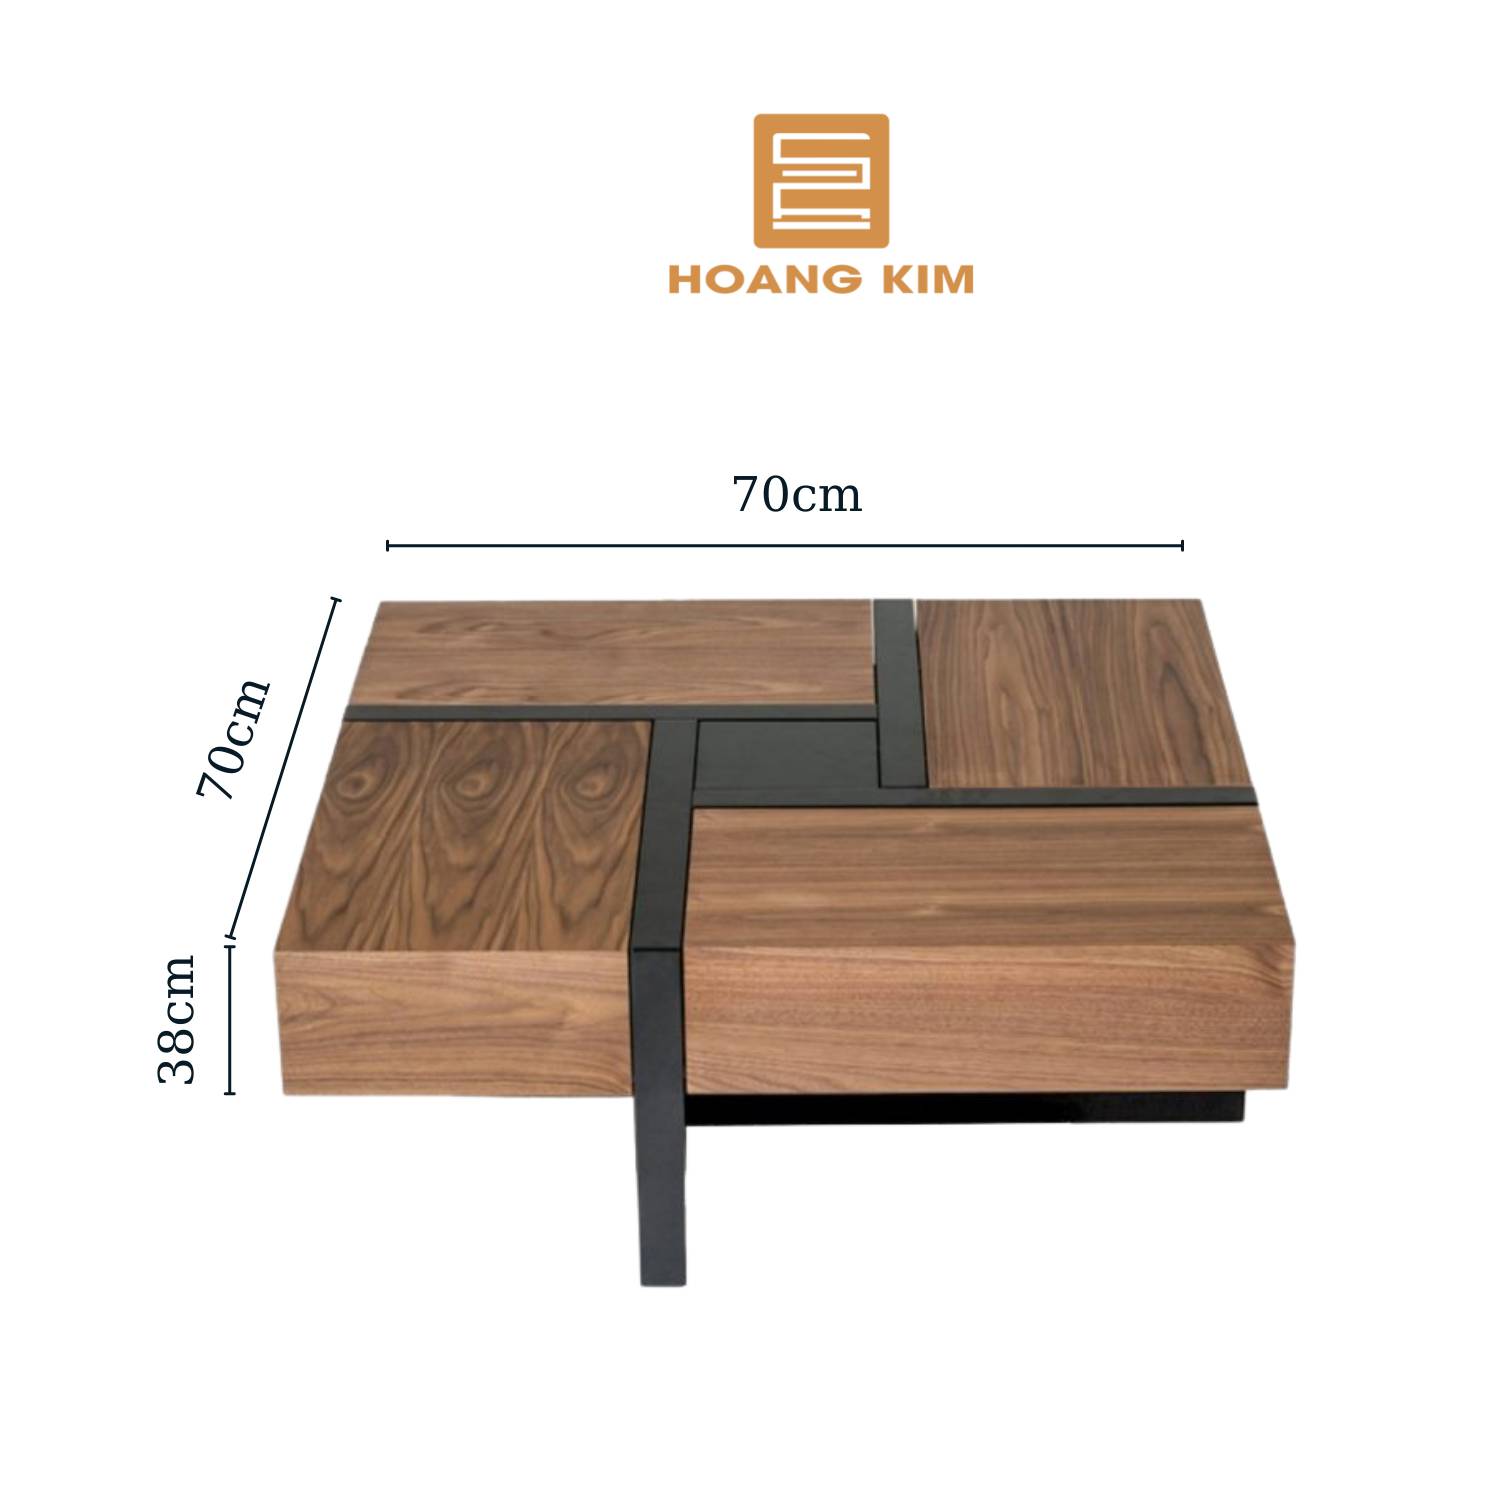 Bàn trà gỗ thông mình Decor Hoàng Kim, bàn gỗ cao cấp thiết kế Bắc Âu hiện đại